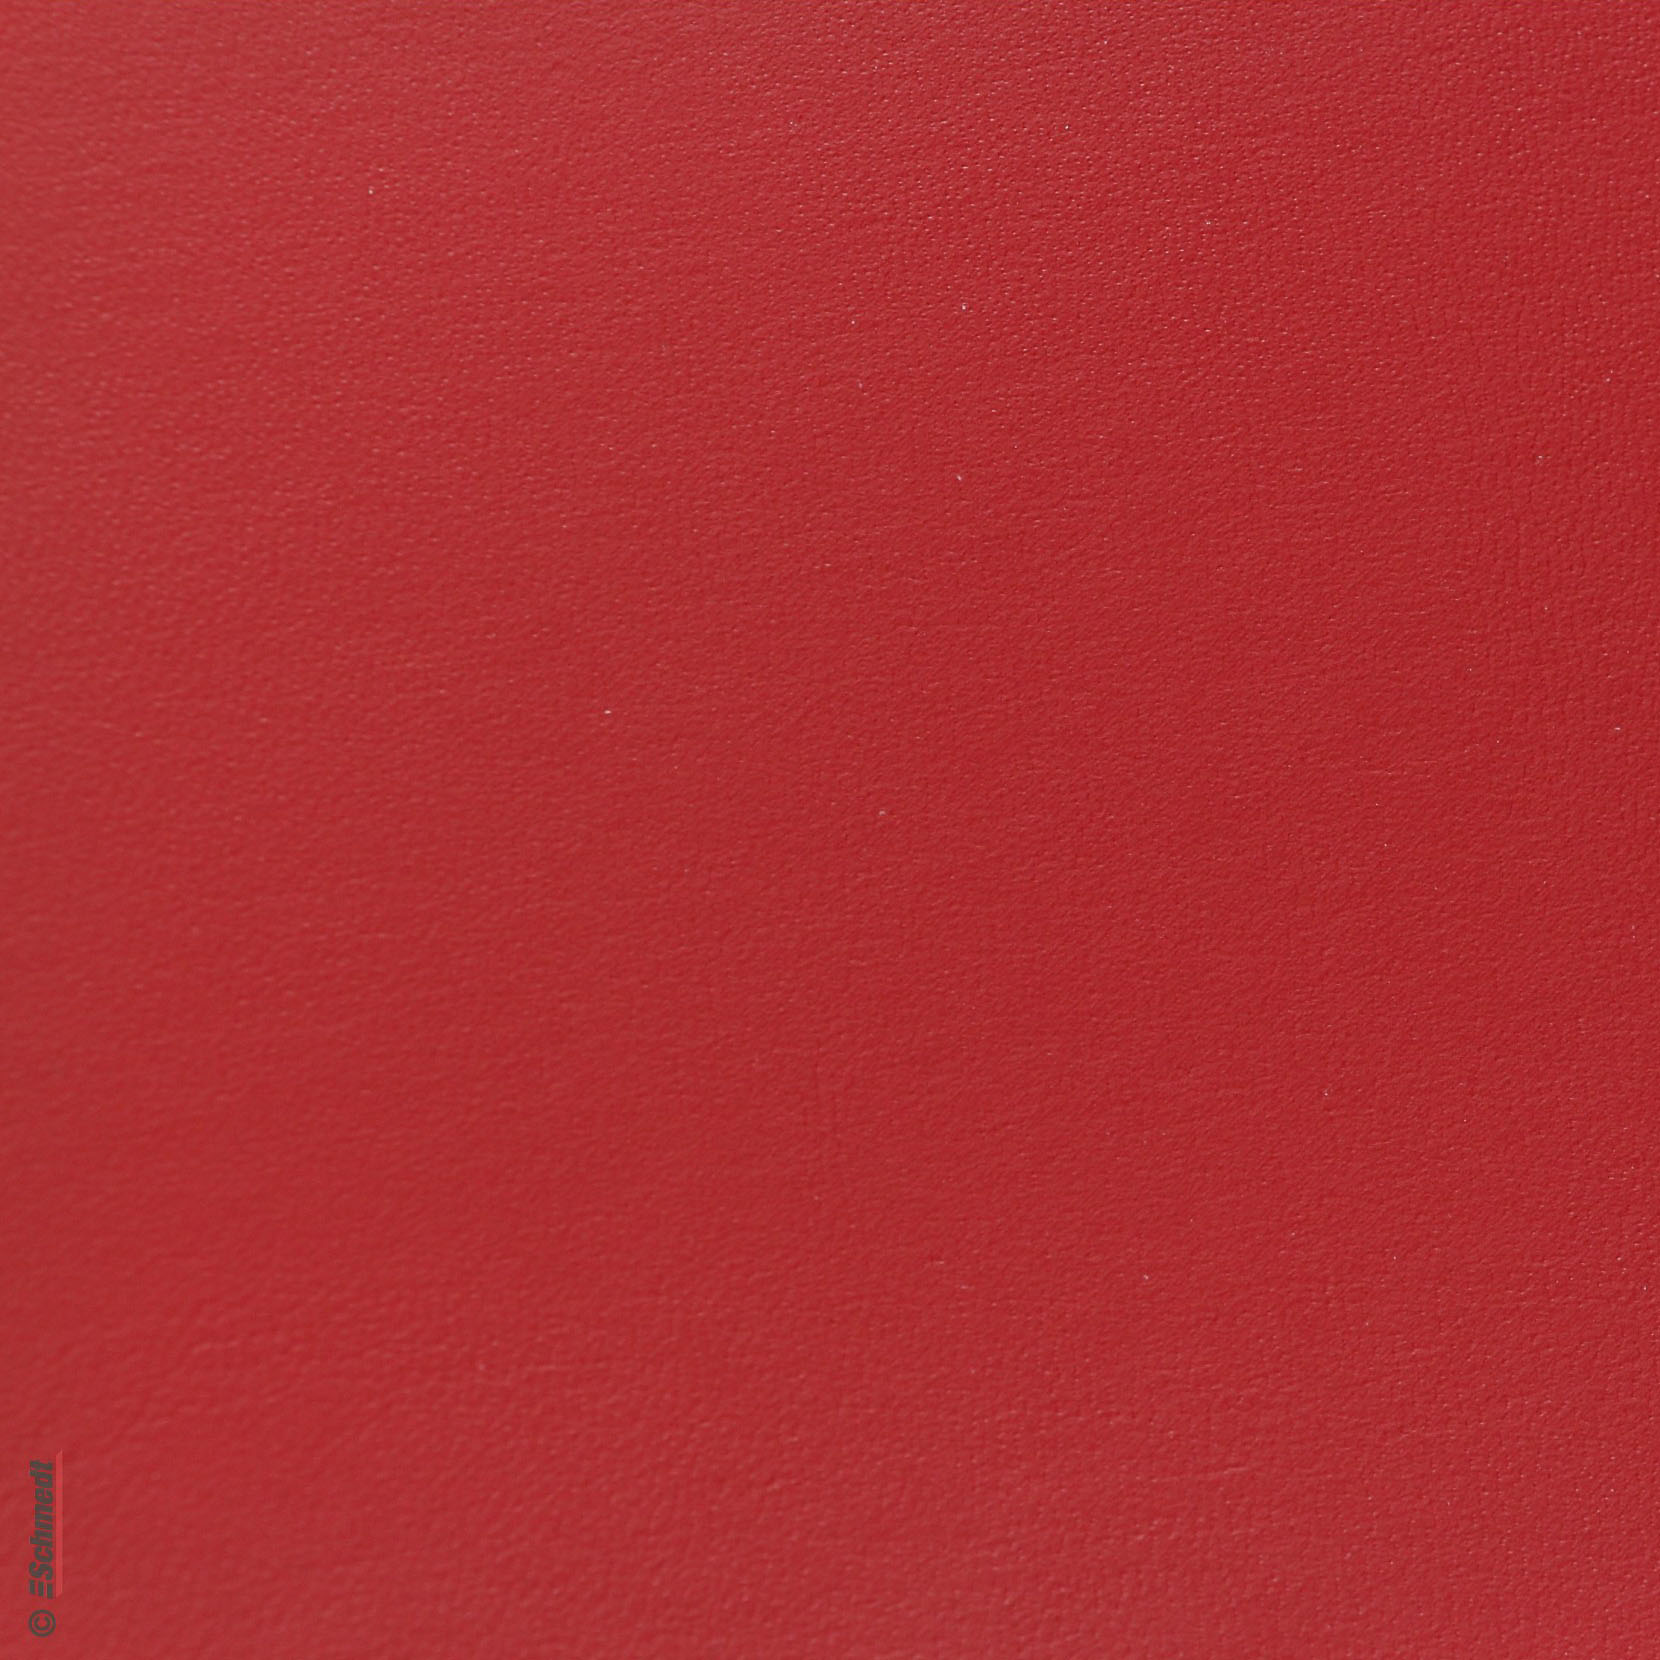 Rainbow LX - Tipo Mattone - Color rojo oscuro - para encuadernado de tapas de libros, carpetas, archivadores, paquetes y muchos otros usos e...